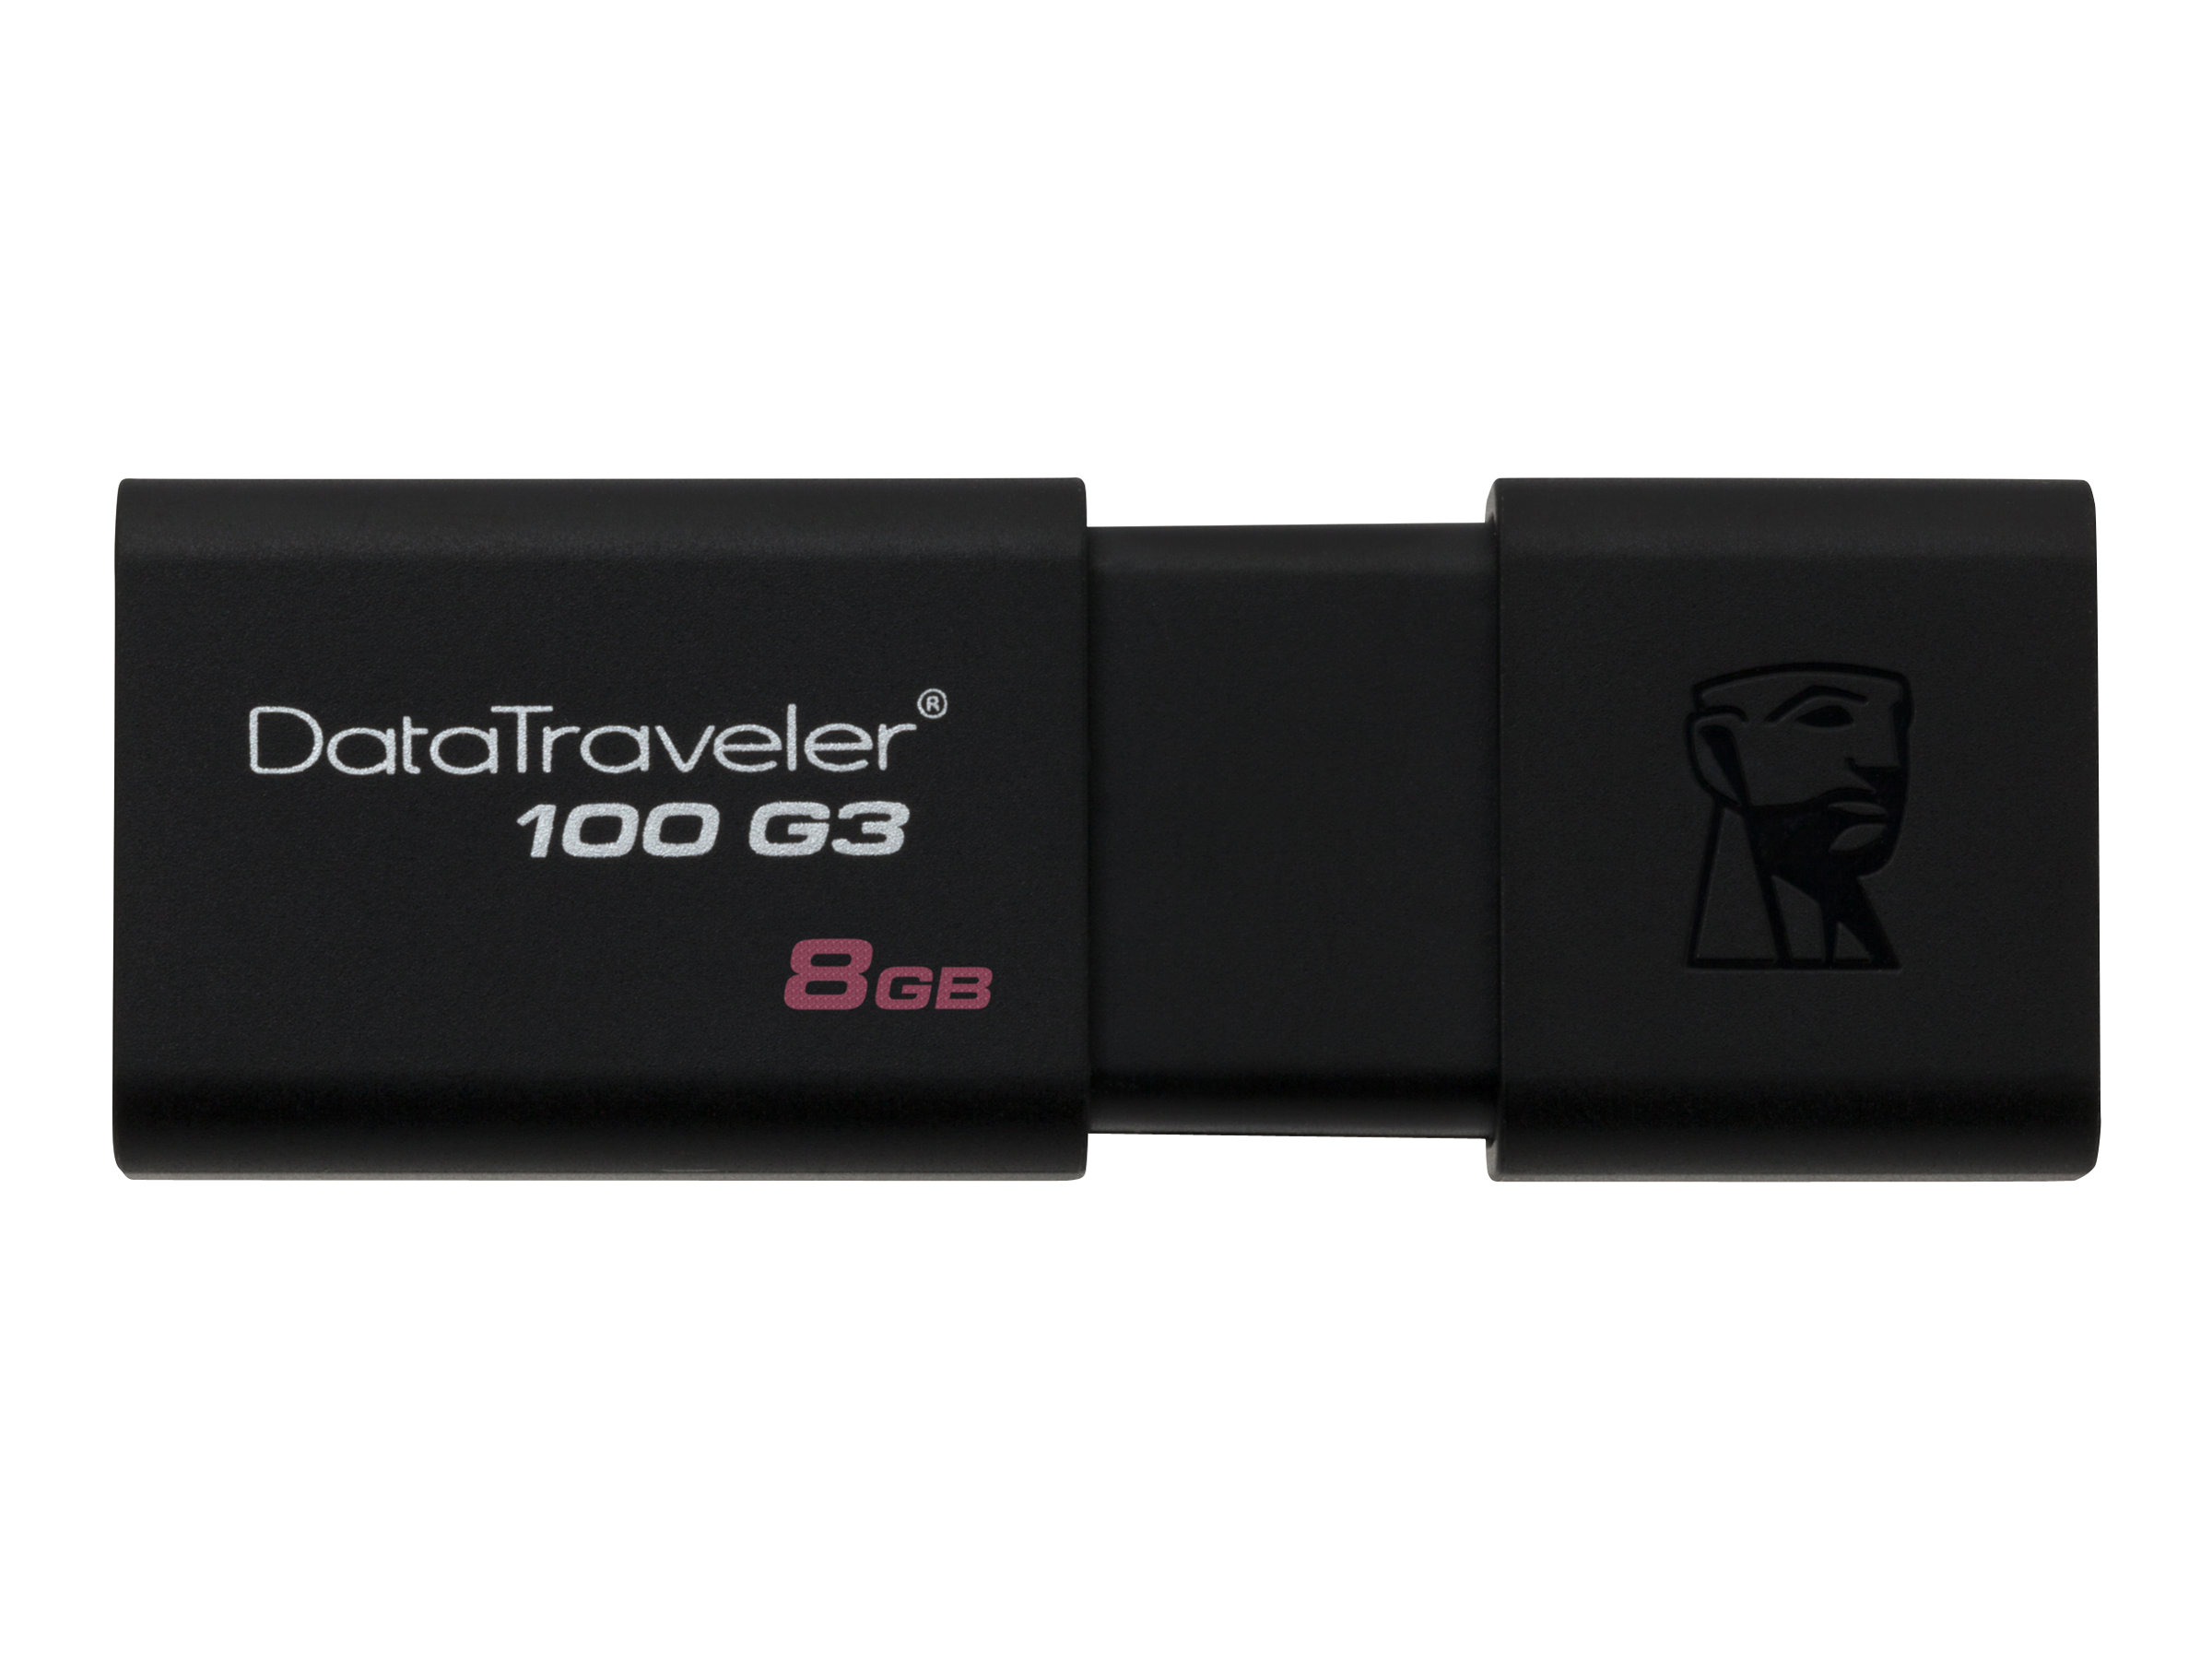 Kingston DataTraveler 100 G3 - USB flash drive - 8 GB - USB 3.0 - black - for P/N: MLWG3ER - image 2 of 5